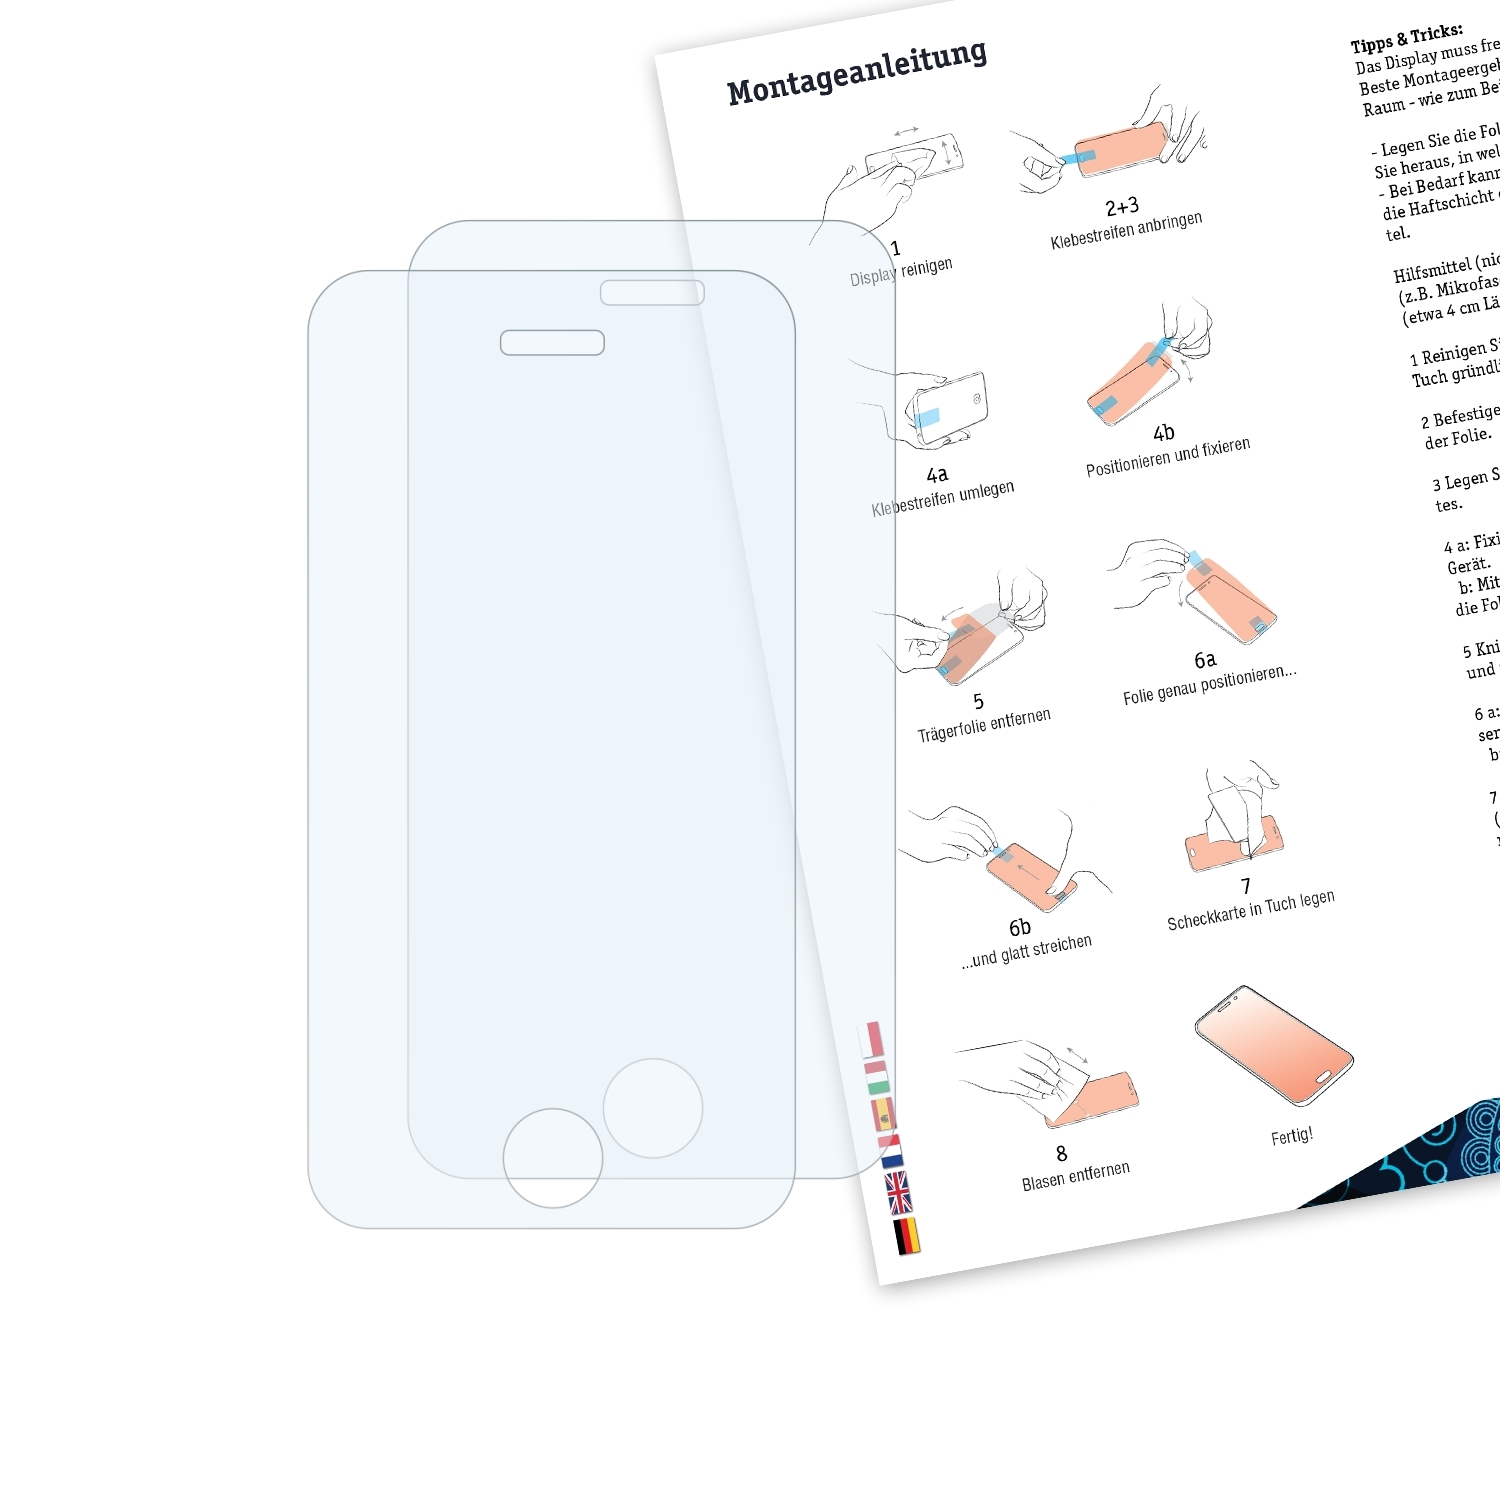 BRUNI 2x Basics-Clear Schutzfolie(für iPhone Apple 3Gs)